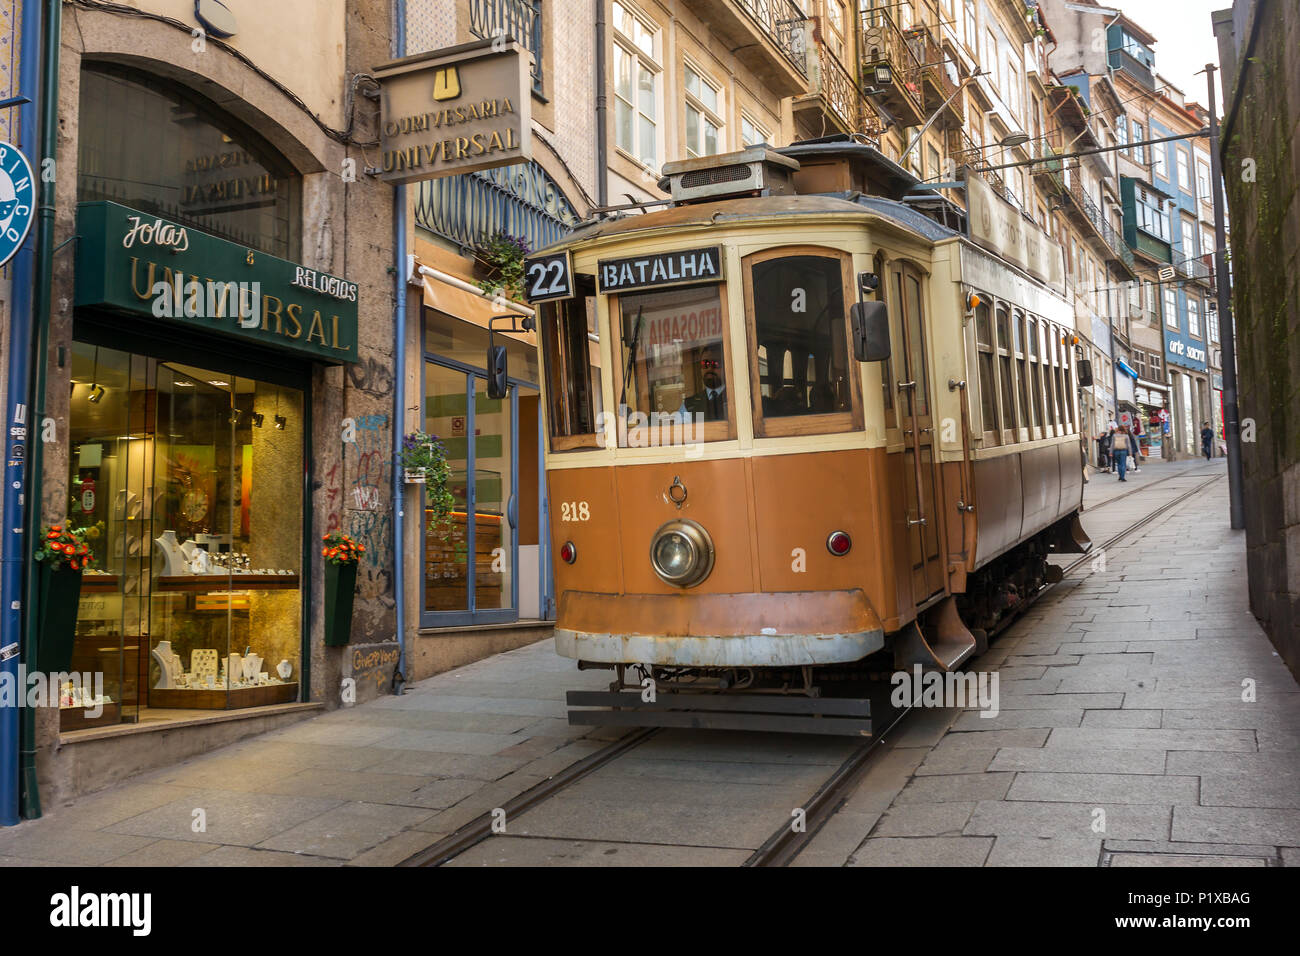 Porto, Portugal - January 16, 2018: Old tram in Porto, Portugal. Stock Photo